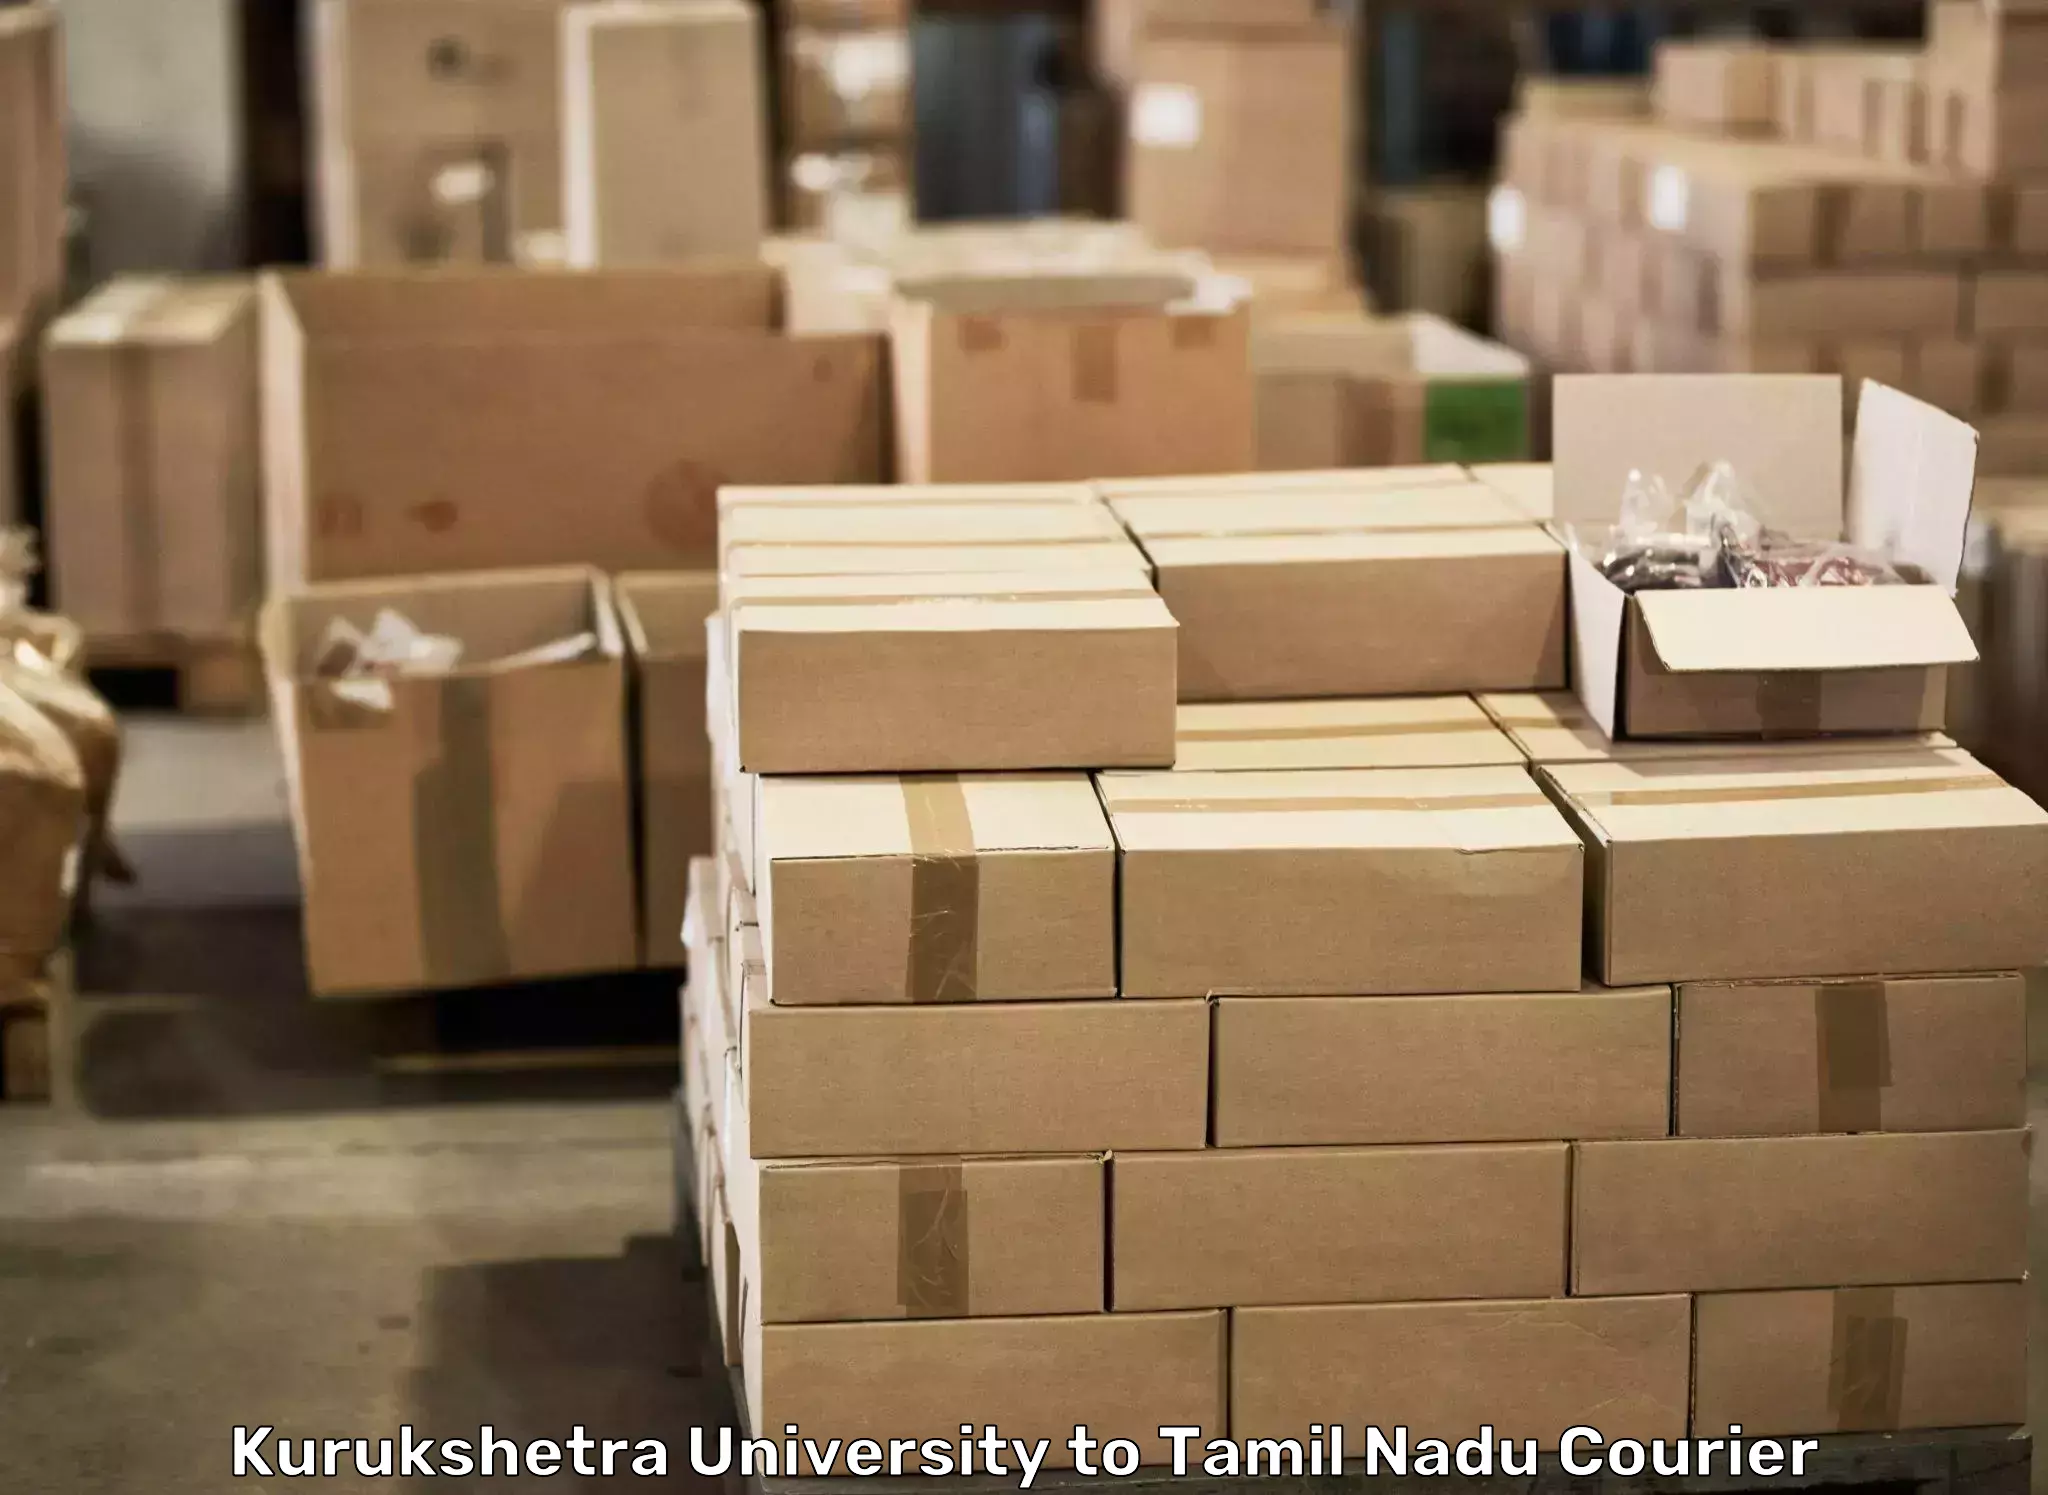 Professional moving company Kurukshetra University to Tiruvarur